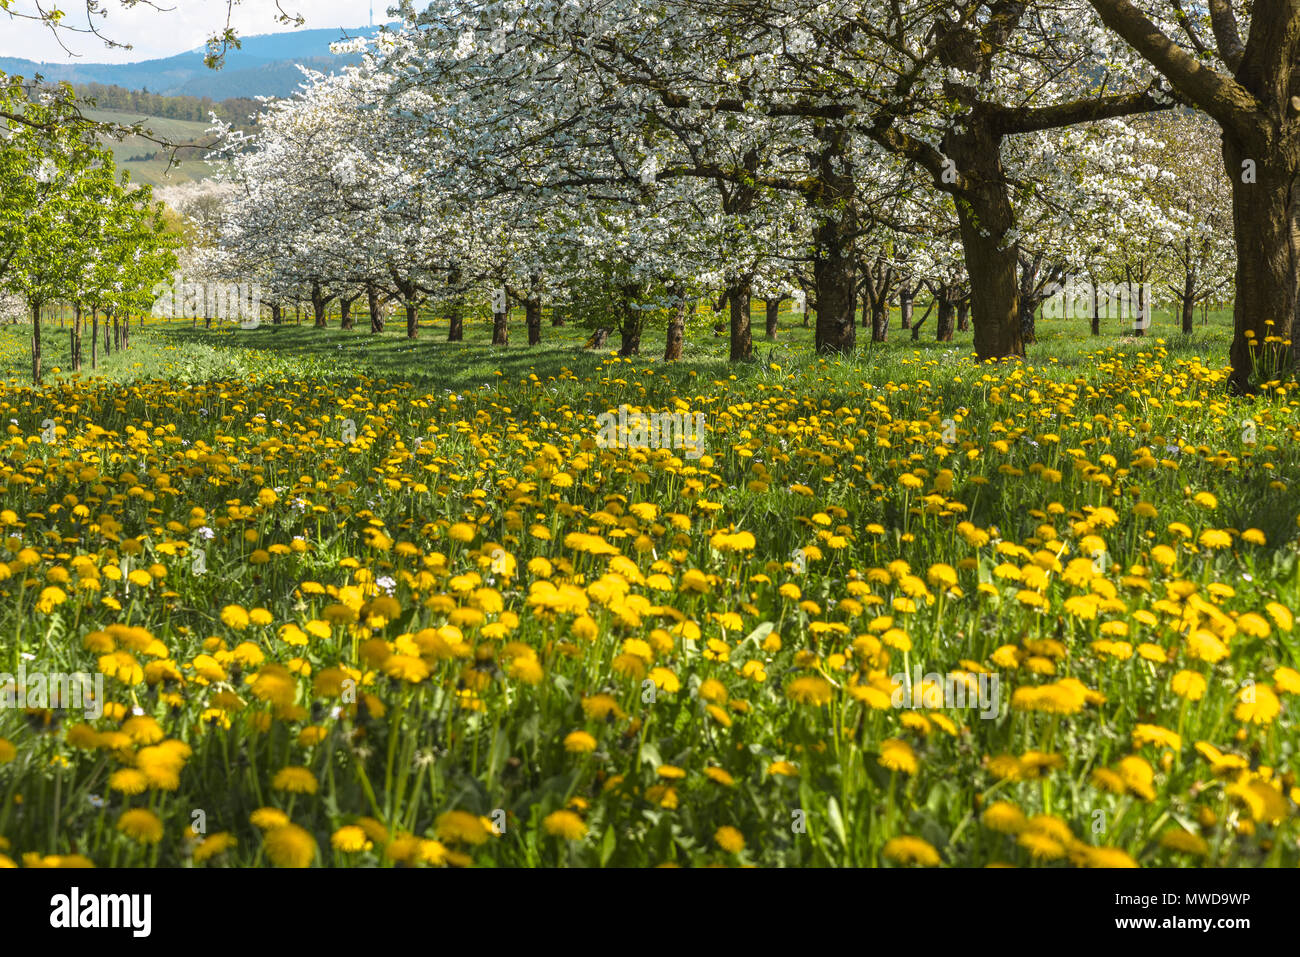 Frühlingswiese mit blühenden Obstgarten Bäume in der Region Ortenau, Süddeutschland, Zone am Fuße des Schwarzwaldes, berühmt für Kirschen blühen Stockfoto